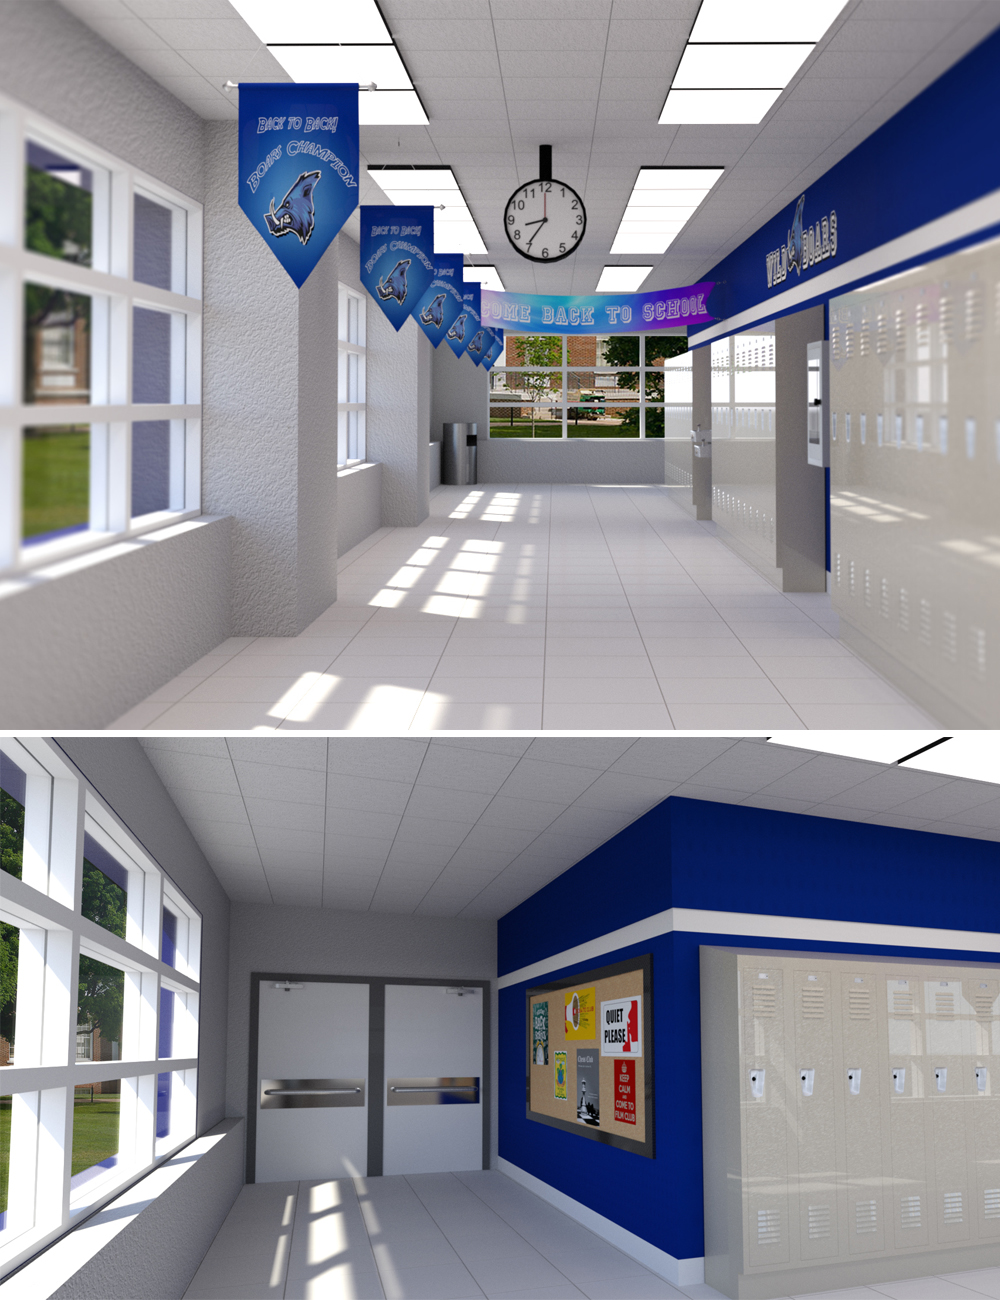 Highschool Hallway by: Digitallab3D, 3D Models by Daz 3D